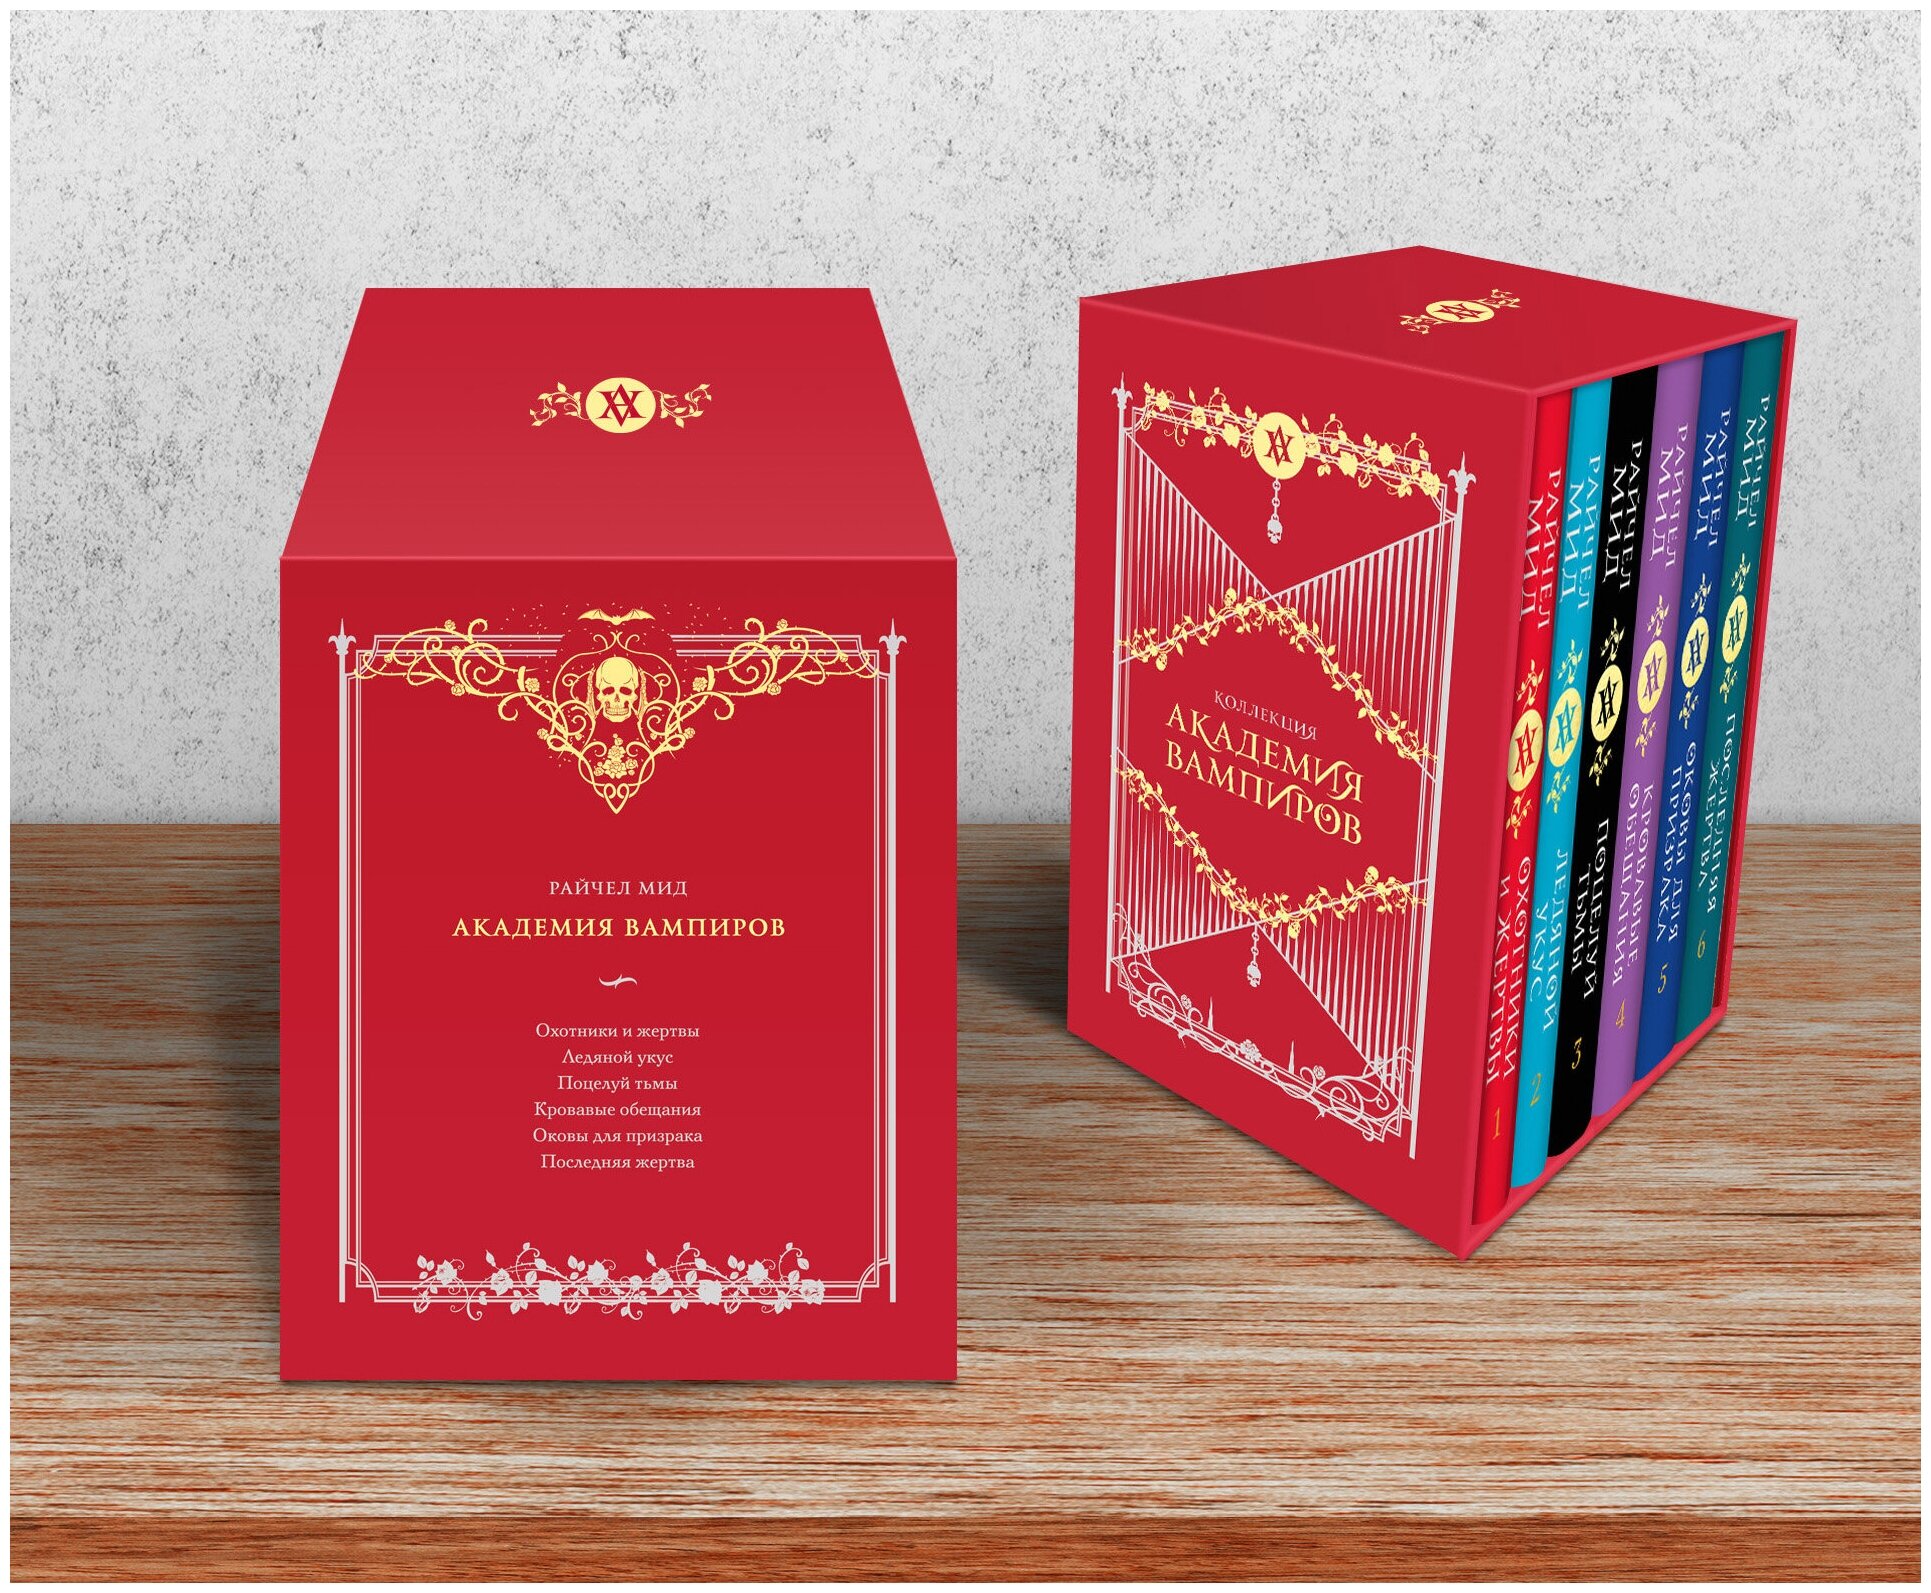 Мид Р. Академия вампиров. Подарочный комплект из 6-ти книг ( Охотники и жертвы + Ледяной укус + Поцелуй тьми и т. д)